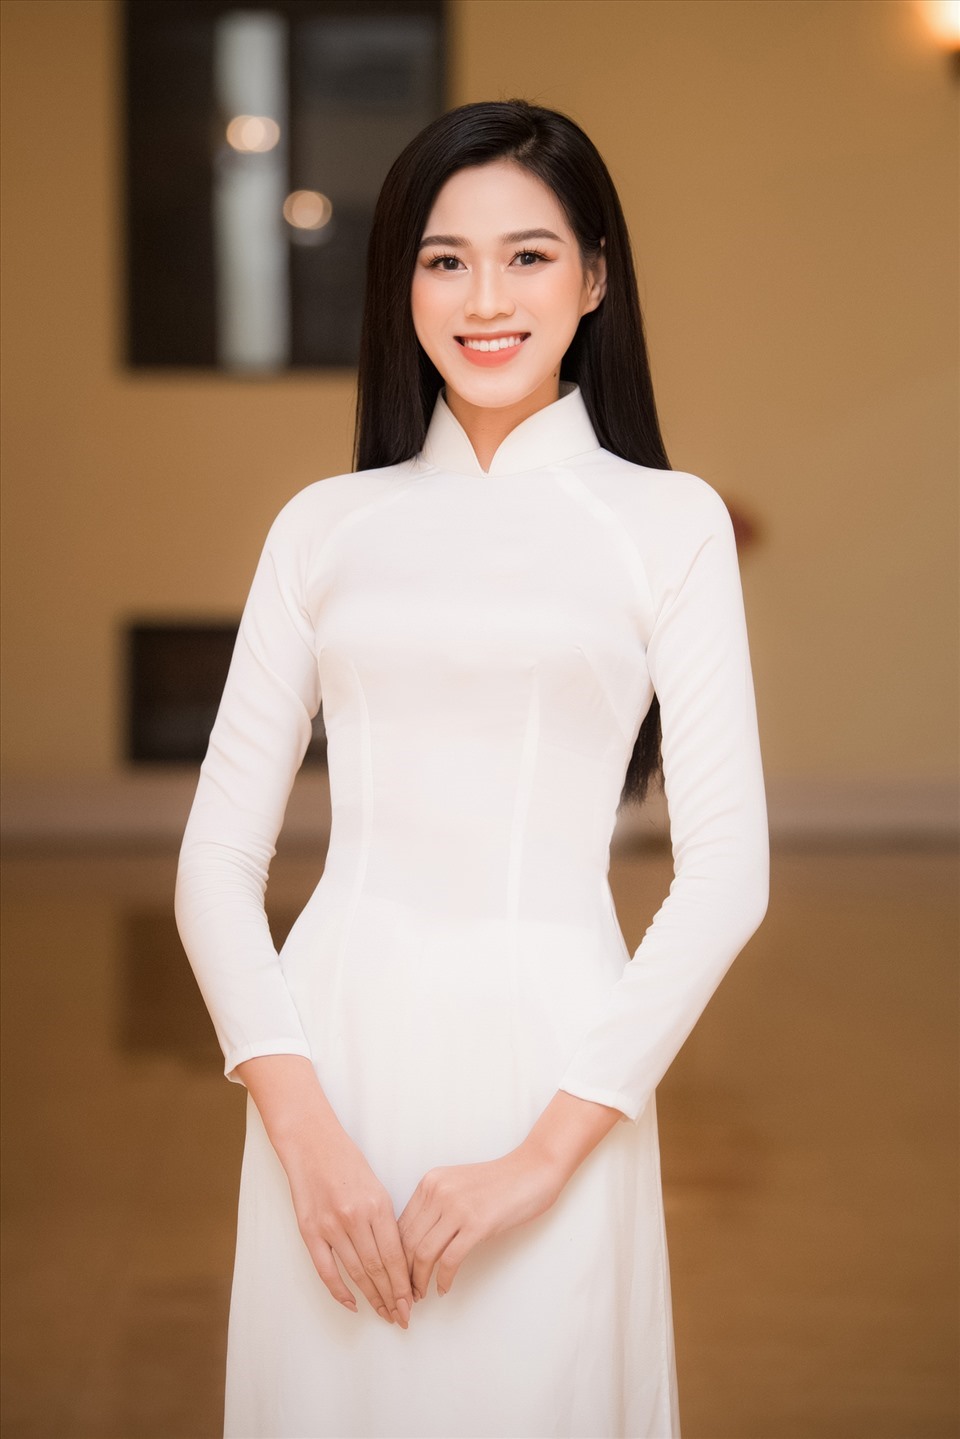 Sau gần 2 tháng đăng quang Hoa hậu Việt Nam 2020, Đỗ Thị Hà đã luôn tích cực trong các hoạt động cộng đồng. Với danh hiệu cao quý, cô đã lan tỏa được lòng nhân ái cũng như truyền cảm hứng cho giới trẻ về tinh thần tương thân tương ái. Mới đây cô vừa đảm nhận cương vị mới, đó chính là đại sứ hình ảnh của Hội Chữ thập đỏ Việt Nam. Ảnh: SV.